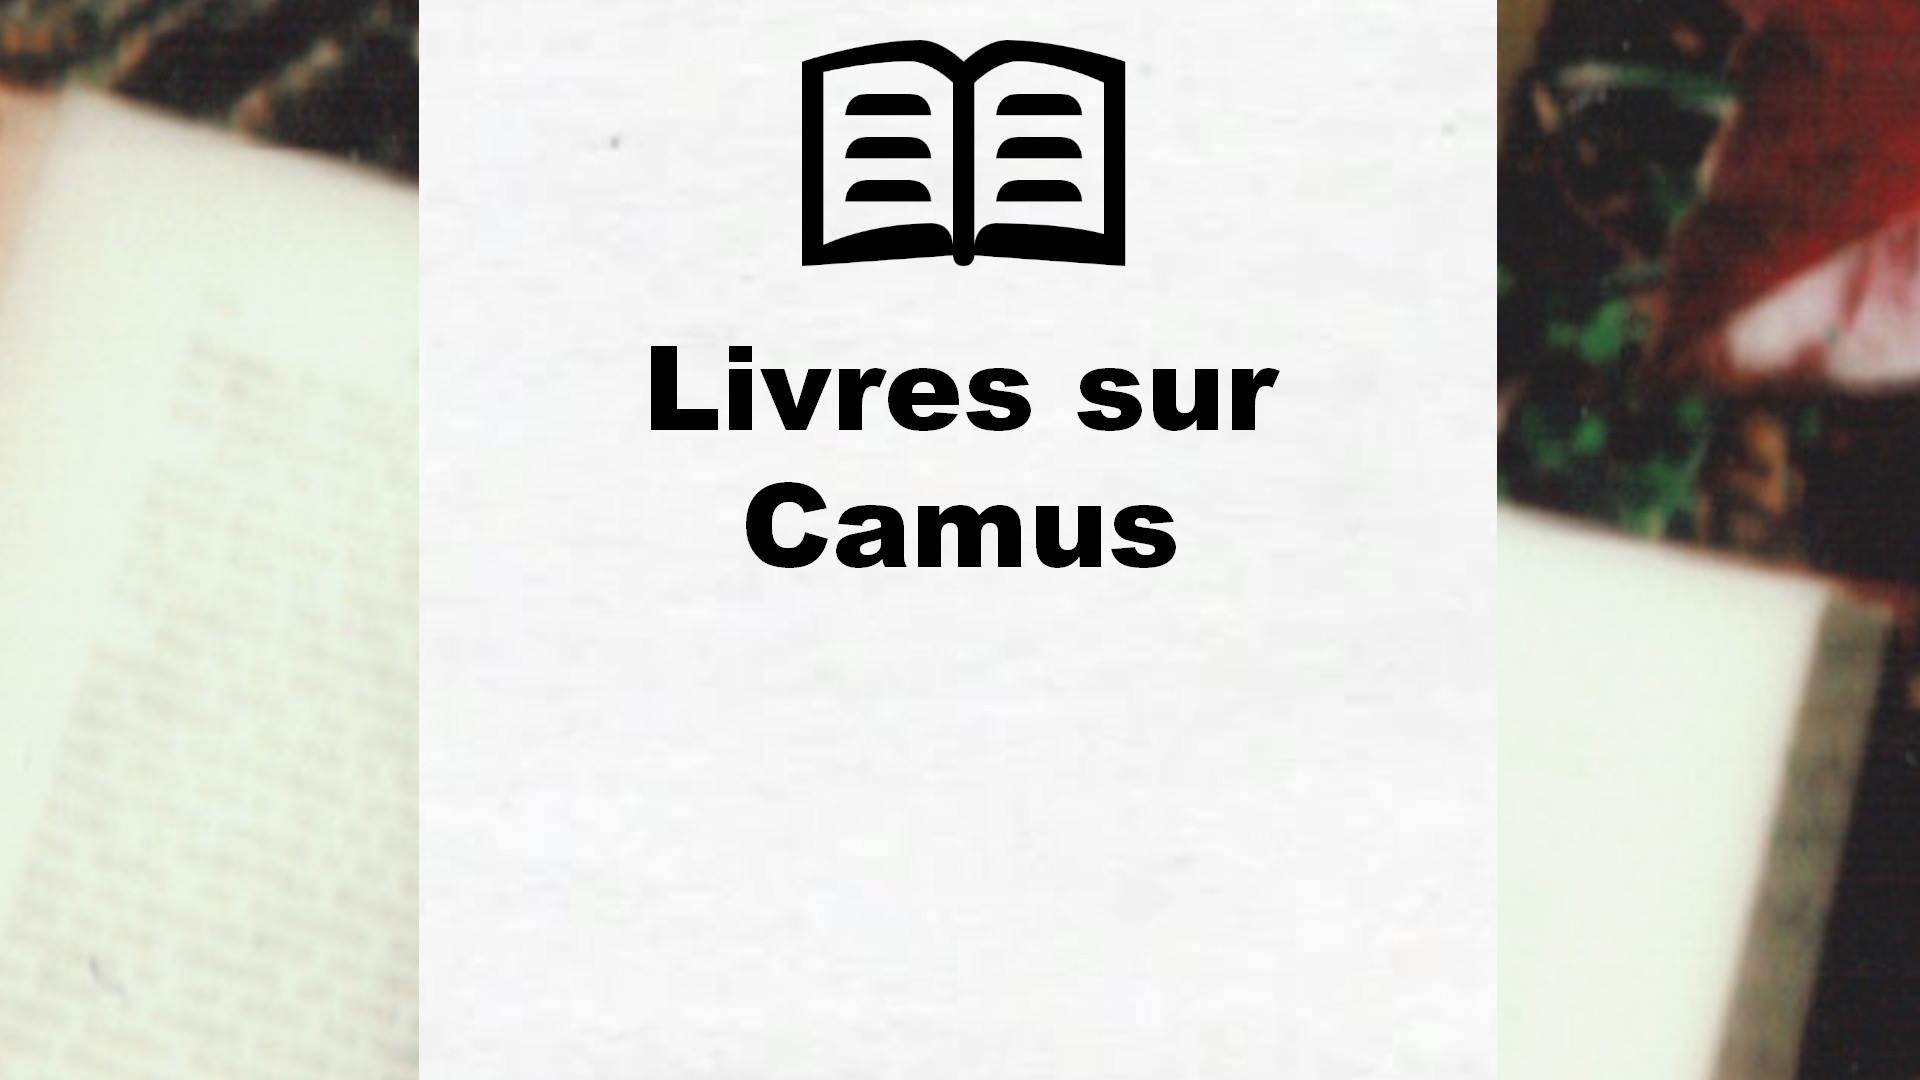 Livres sur Camus